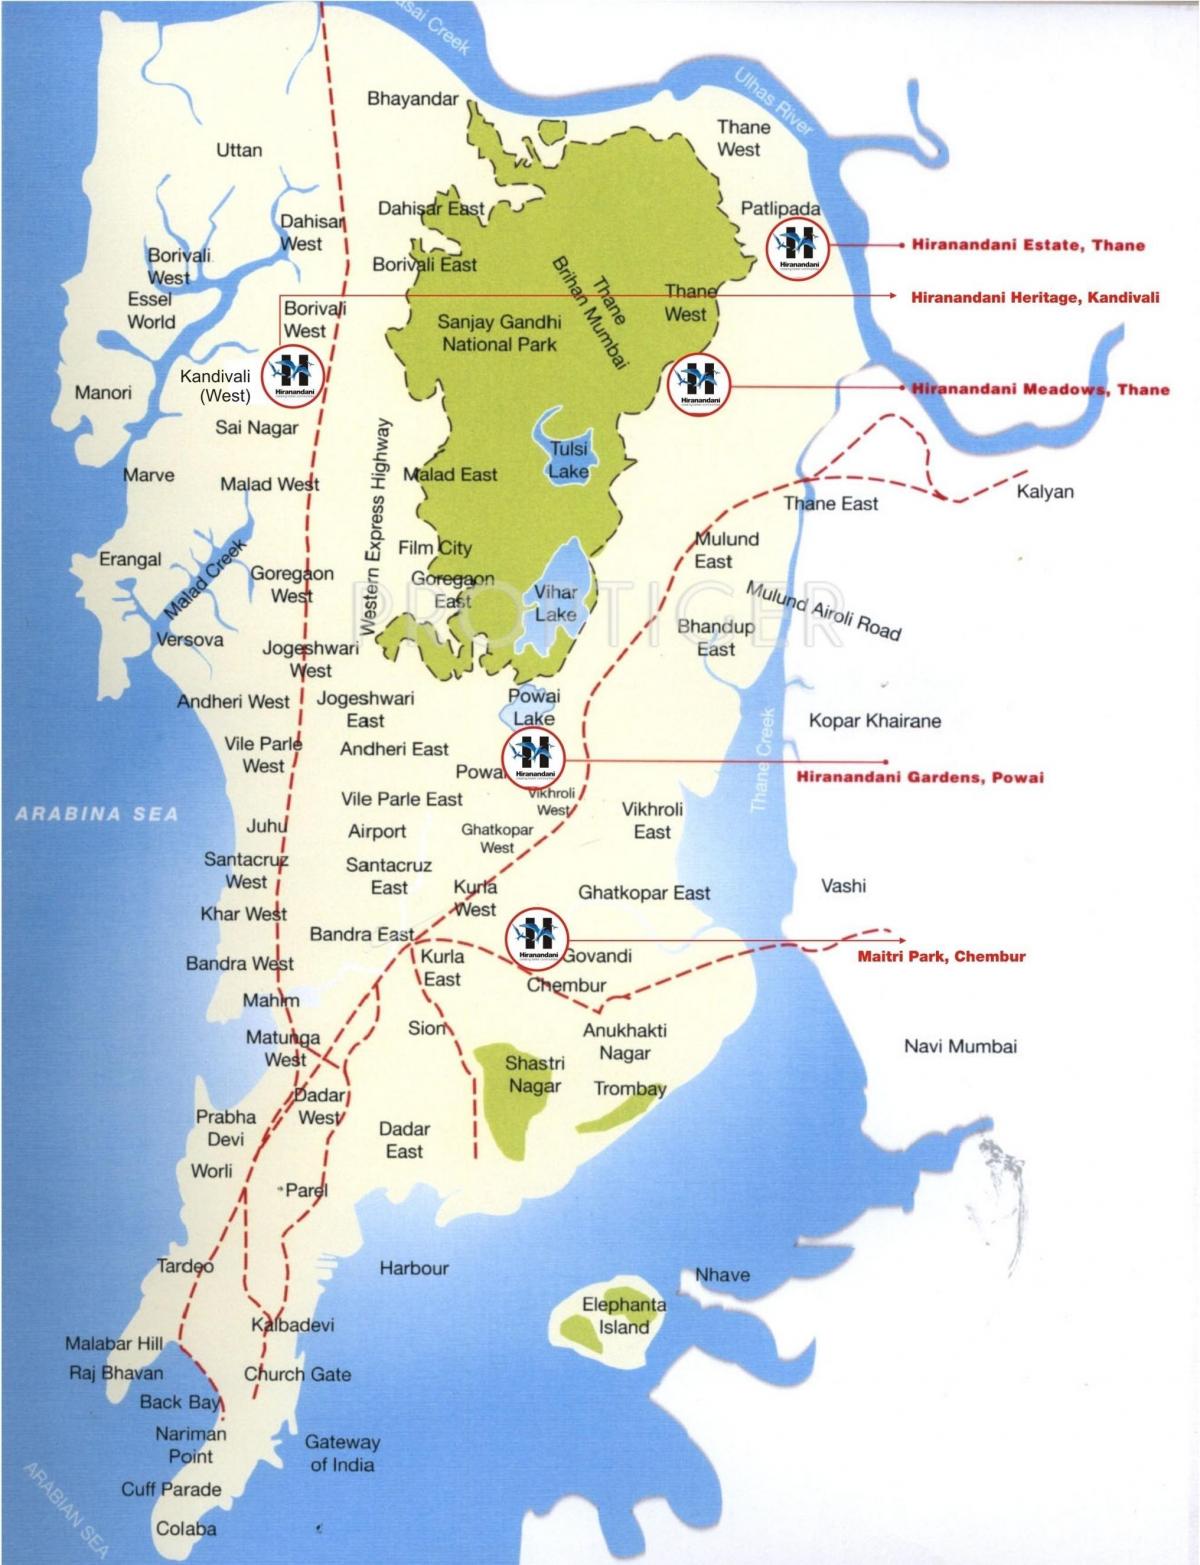 žemėlapis Colaba Mumbajus